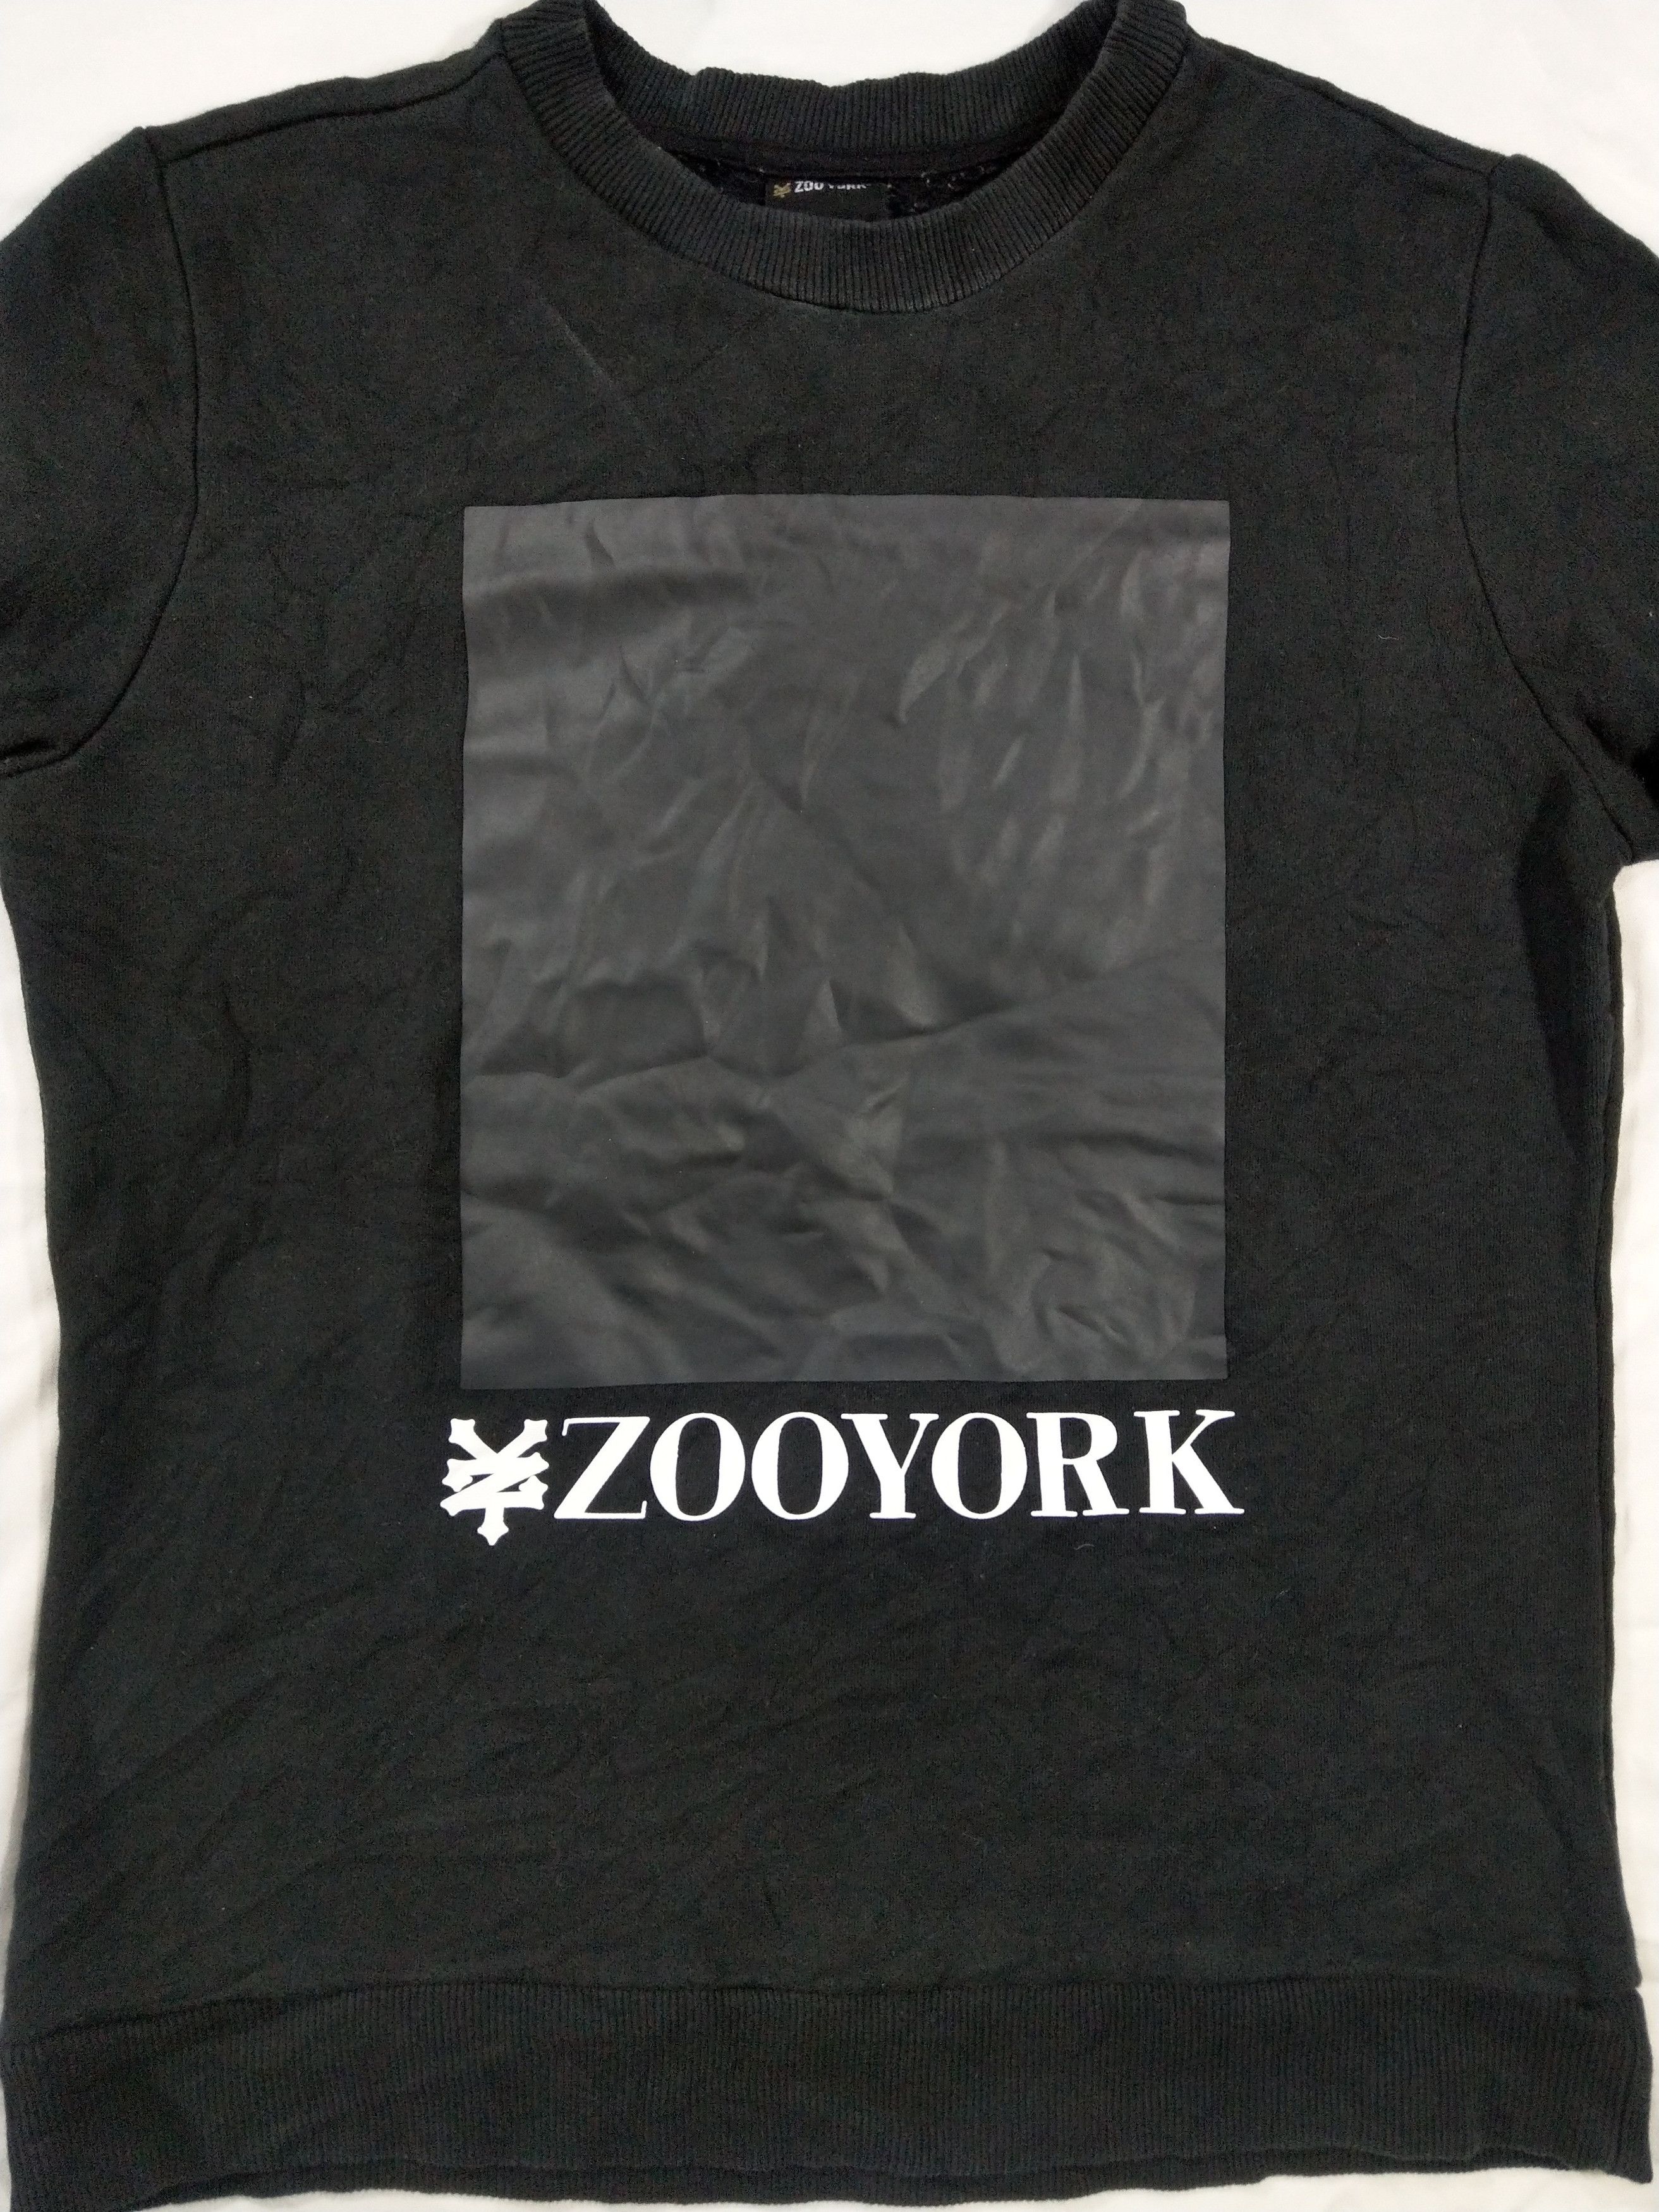 Zoo York Zoo York Sweatshirt Size US S / EU 44-46 / 1 - 4 Thumbnail